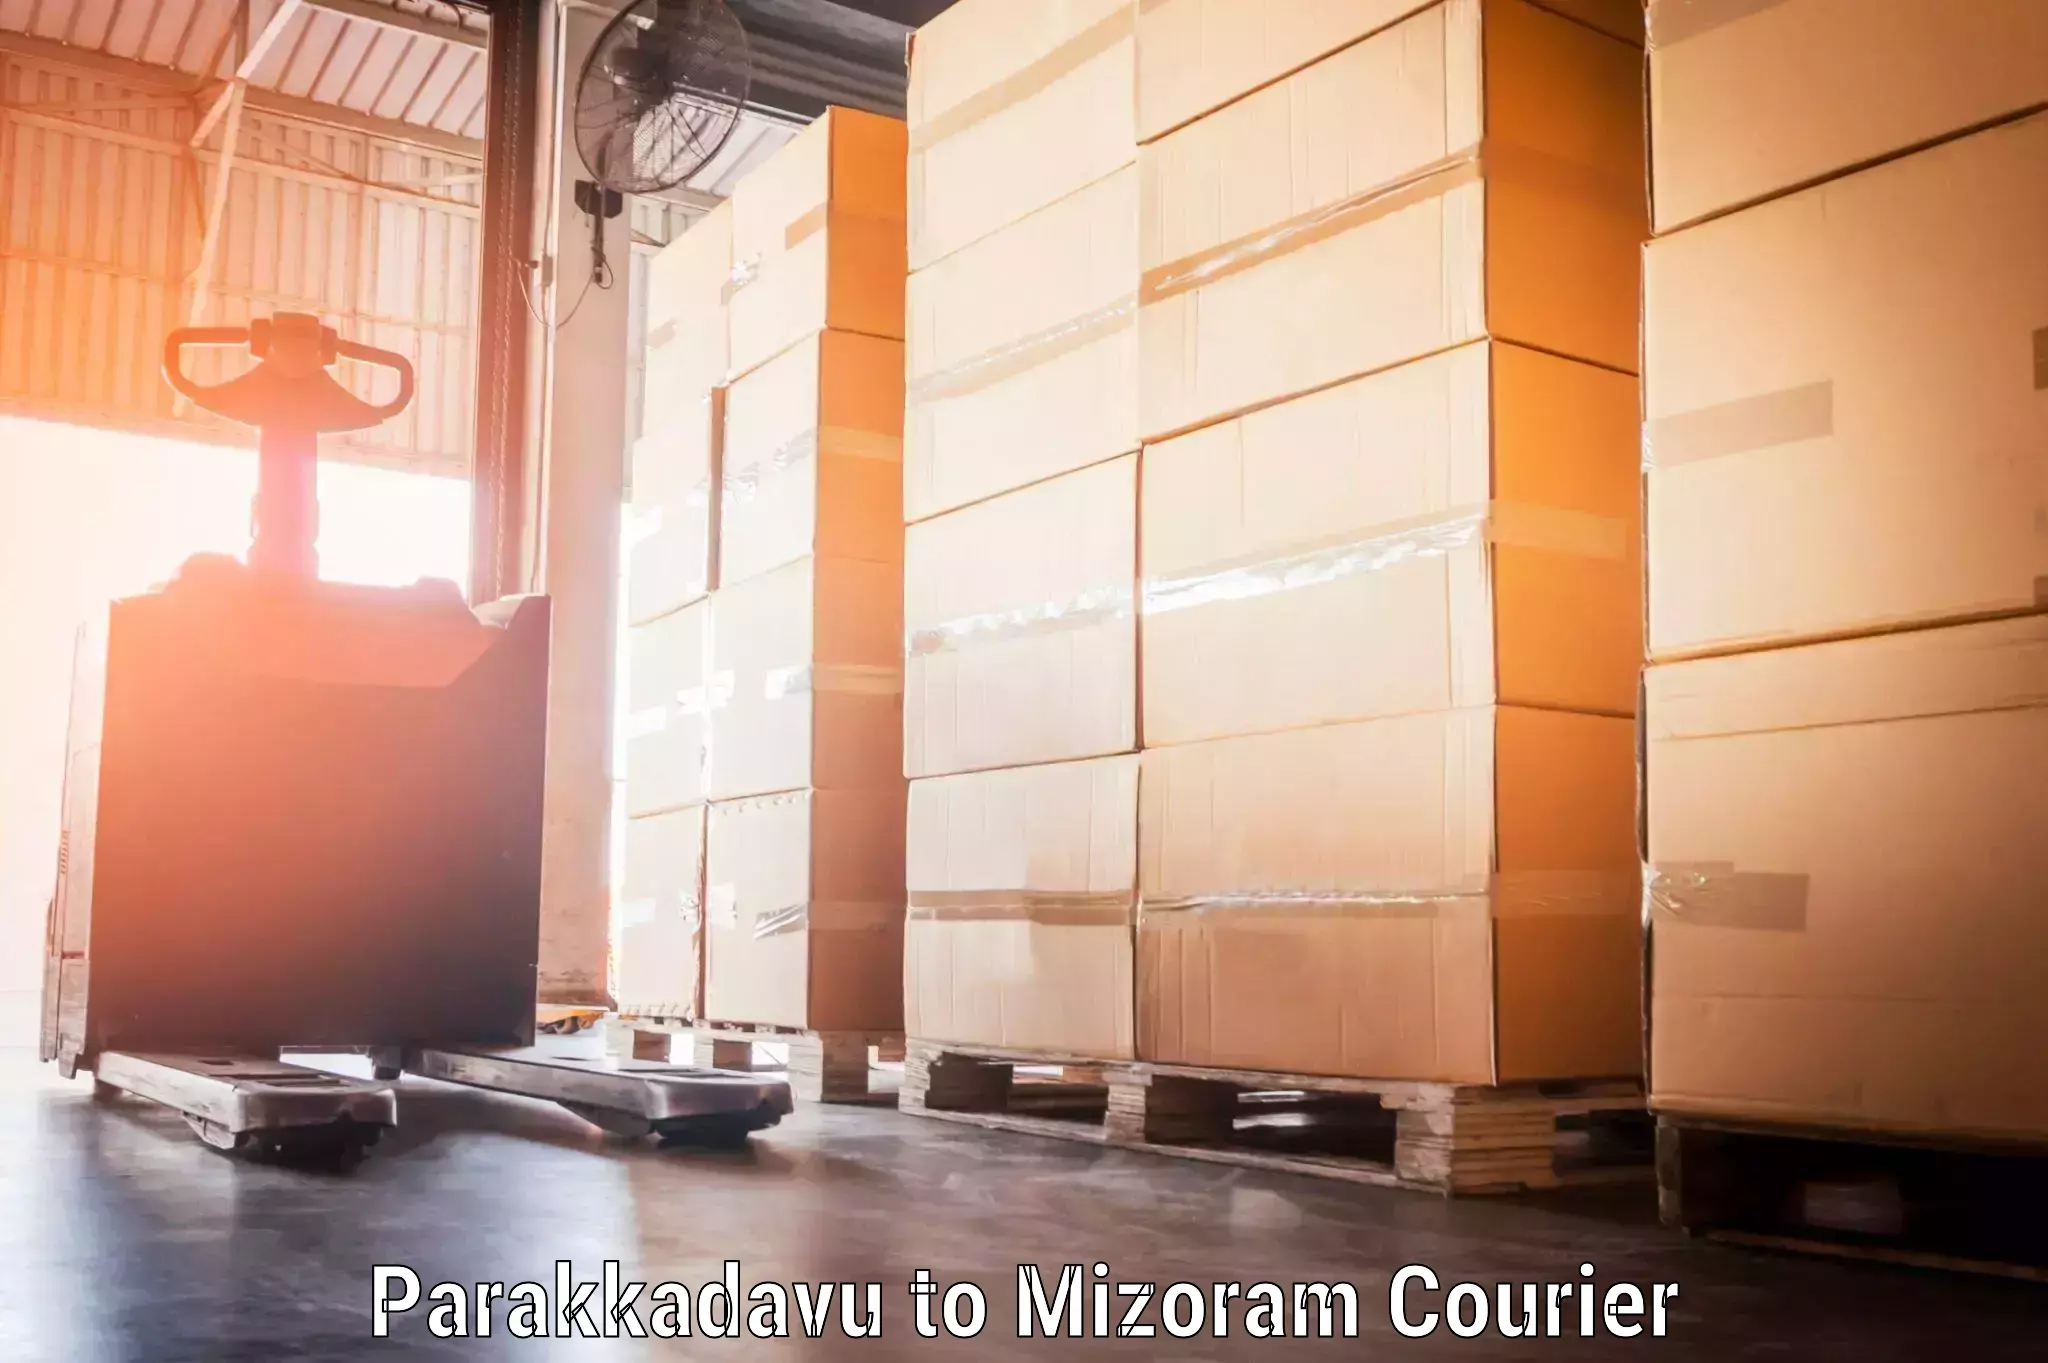 Digital baggage courier Parakkadavu to Mizoram